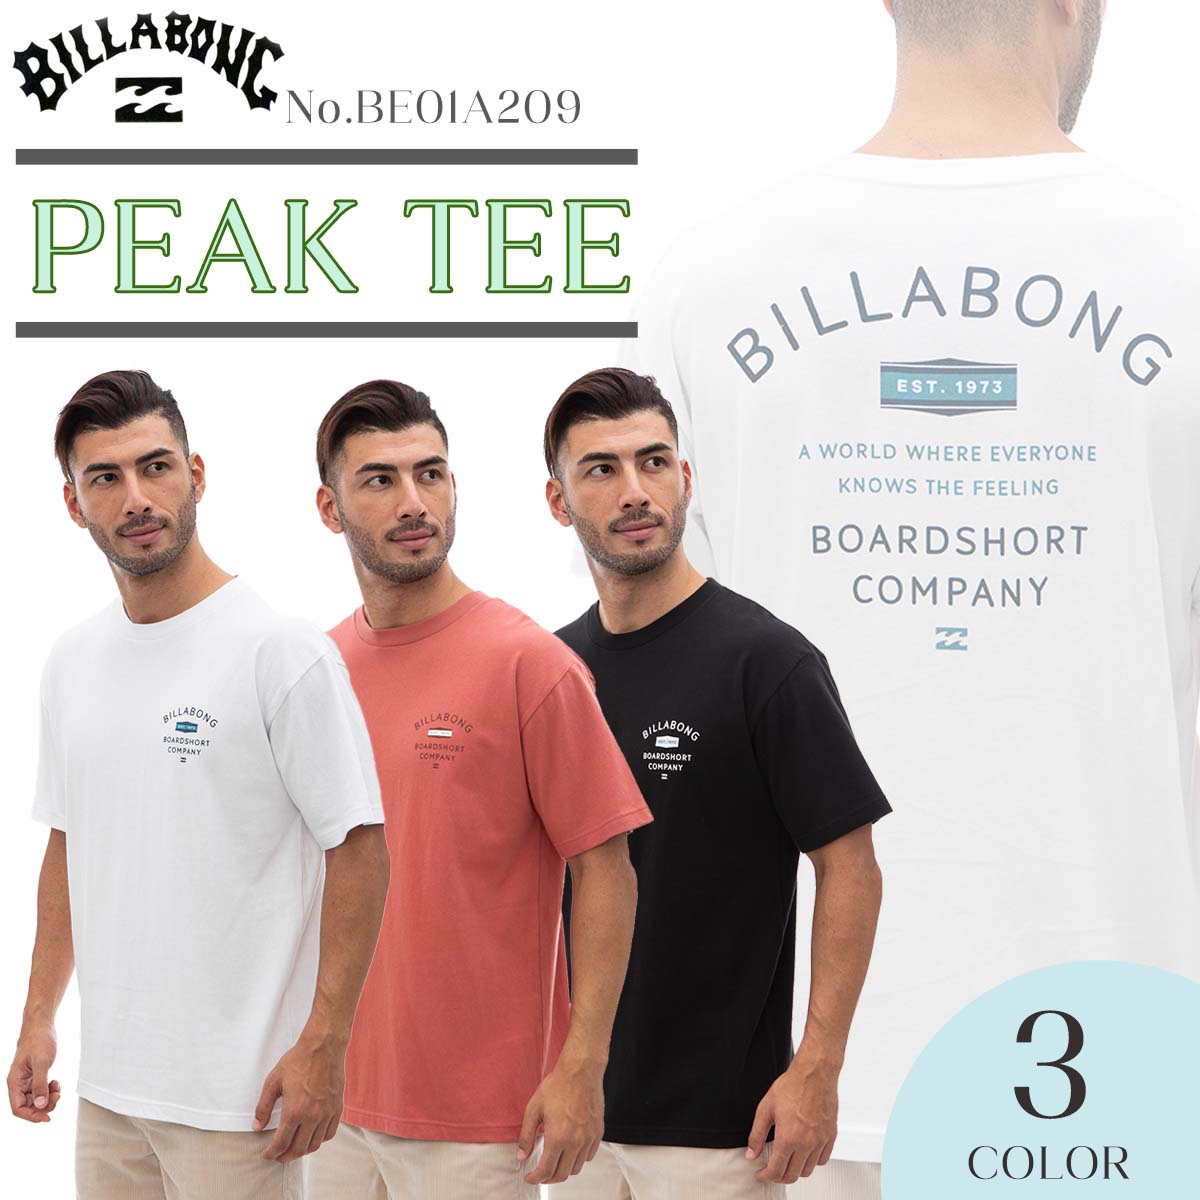 BILLABONG Tシャツ PEAK TEE ゆったりと着れるオーバーサイズTシャツ。 ゆったりとした身幅と丈でレギュラーフィットより大きめなフィットサイズ。 女性がきても可愛く、シンプルなので着回し抜群！ ■ 商品詳細 ■ 【品番】BE01A209 ■素材： Cotton100% ■カラー： BLK(ブラック) LRD(レッド) WHT(ホワイト) ■サイズ： M L ※クレジットカード/銀行振り込み/楽天(etc)決済など、15時までに決済完了の場合は即日発送！(※15時以降の決済確認は翌日以降ご入金確認後の発送） オーシャン スポーツメール便【ロケット便】 代引き決済はご利用頂けません。※代金引換え決済をご希望の場合は、小型宅配便等に対応の商品ページにてご注文下さい。 ○デザイン等、予告なしに変更となる場合があります。ご了承ください。 ○掲載商品の色は、できる限り現品と同じになるよう努めておりますが、ご使用のパソコン環境により多少色合いが異なる場合がございます。著しい色の相違は御座いませんのでご安心ください。 ○お急ぎのお客様は、ご確認していただく事をお勧め致します。 ※コチラの商品はメール便（ネコポス）での発送となります。 メール便の配送はポスト投函でのお届けとなります。 手渡しでの配達や日時指定、代引きでのお支払等をご希望の場合は『小型宅配便対応』の商品ページにてご注文頂きますようにお願い致します。 メーカー希望小売価格はメーカーサイトに基づいて掲載しています